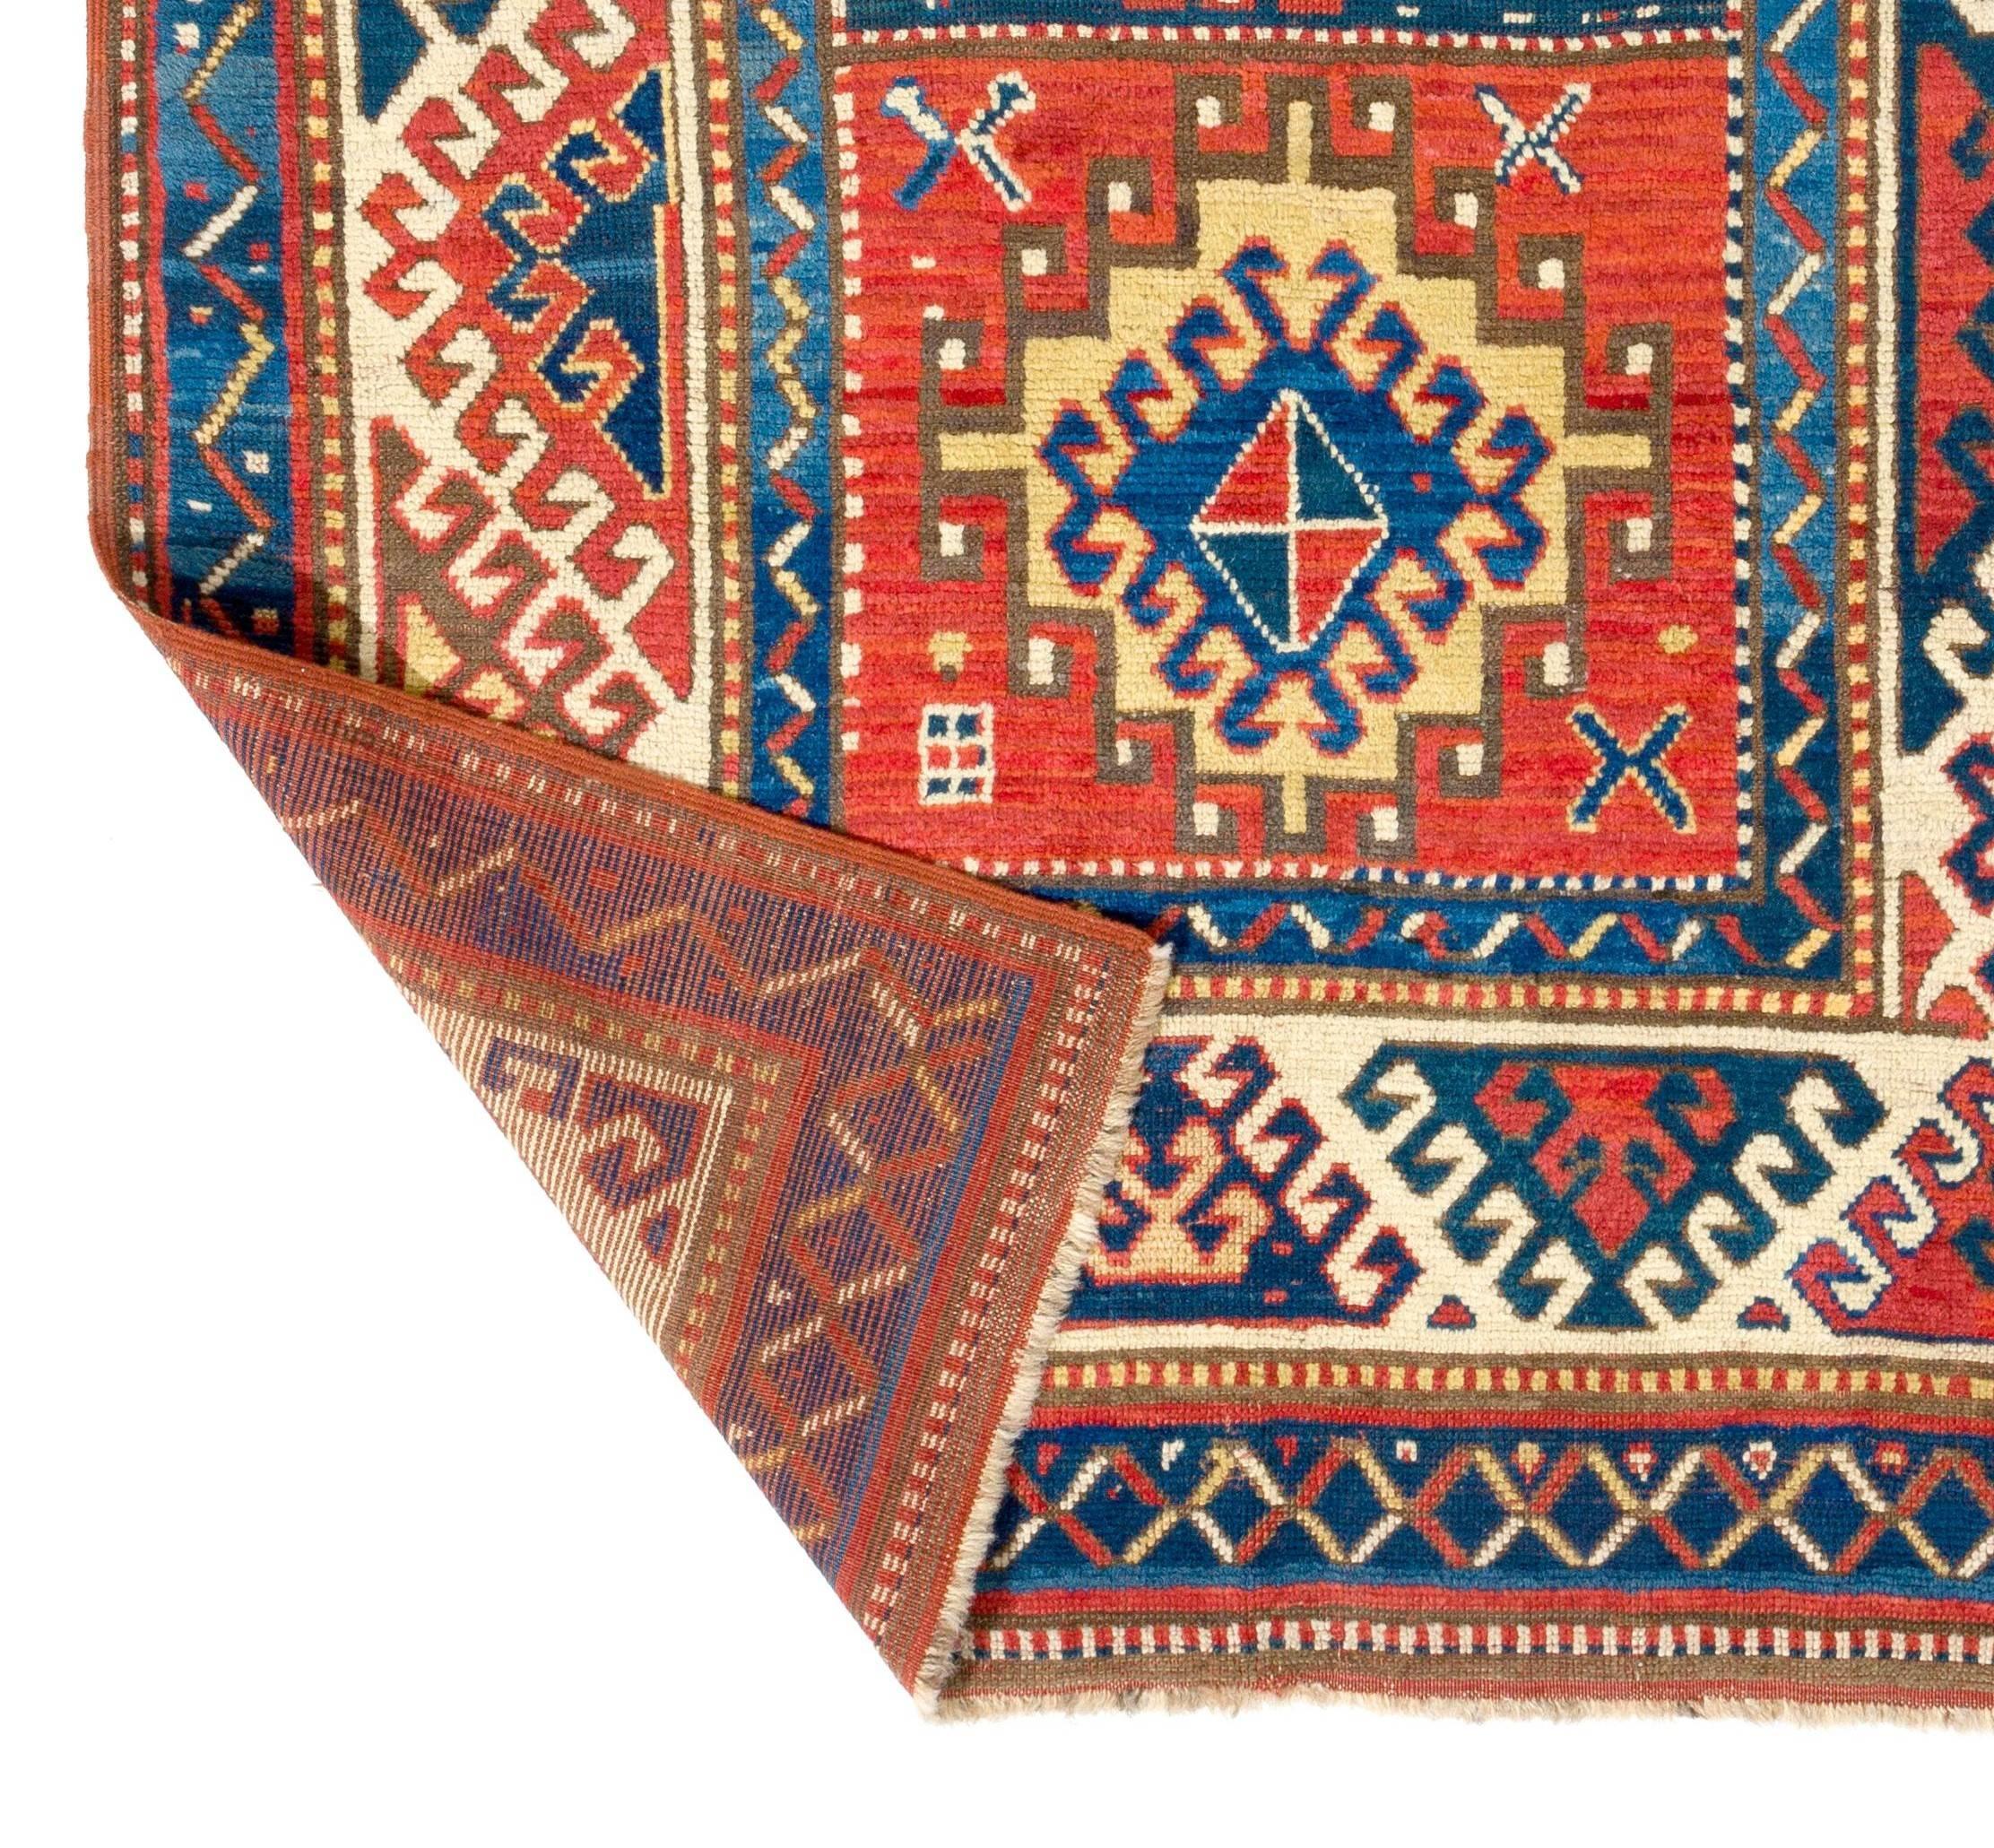 Late 19th Century 4x7.3 ft Antique Caucasian Bordjalou Kazak Rug. Top Shelf Collectors Carpet For Sale